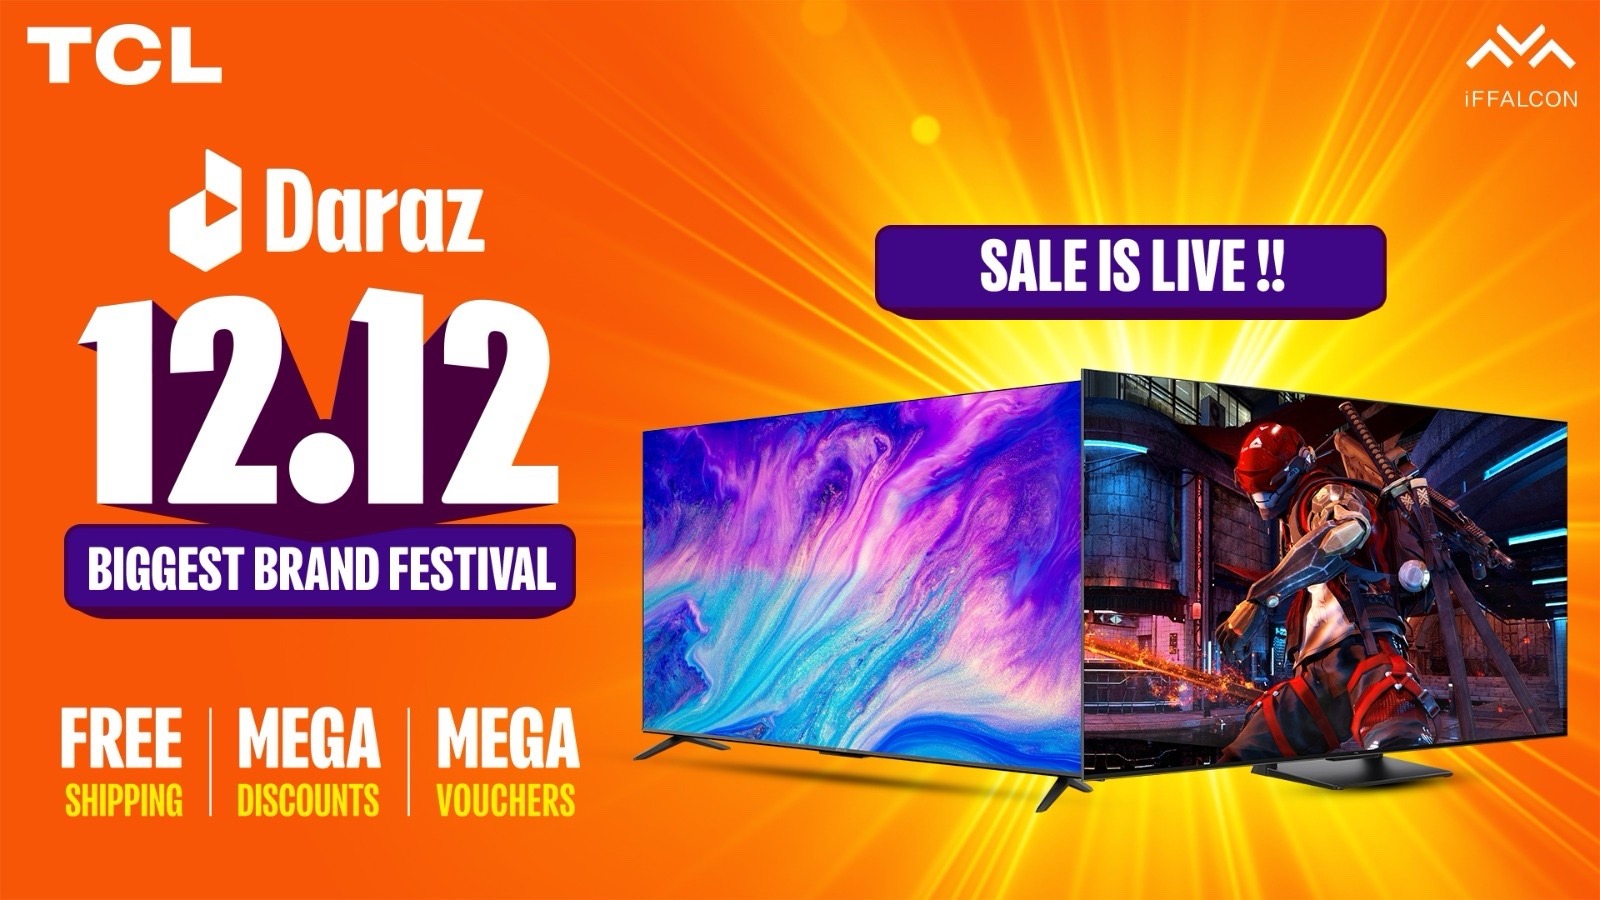 TCL Pakistan Announces Mega 12.12 Sale with Daraz